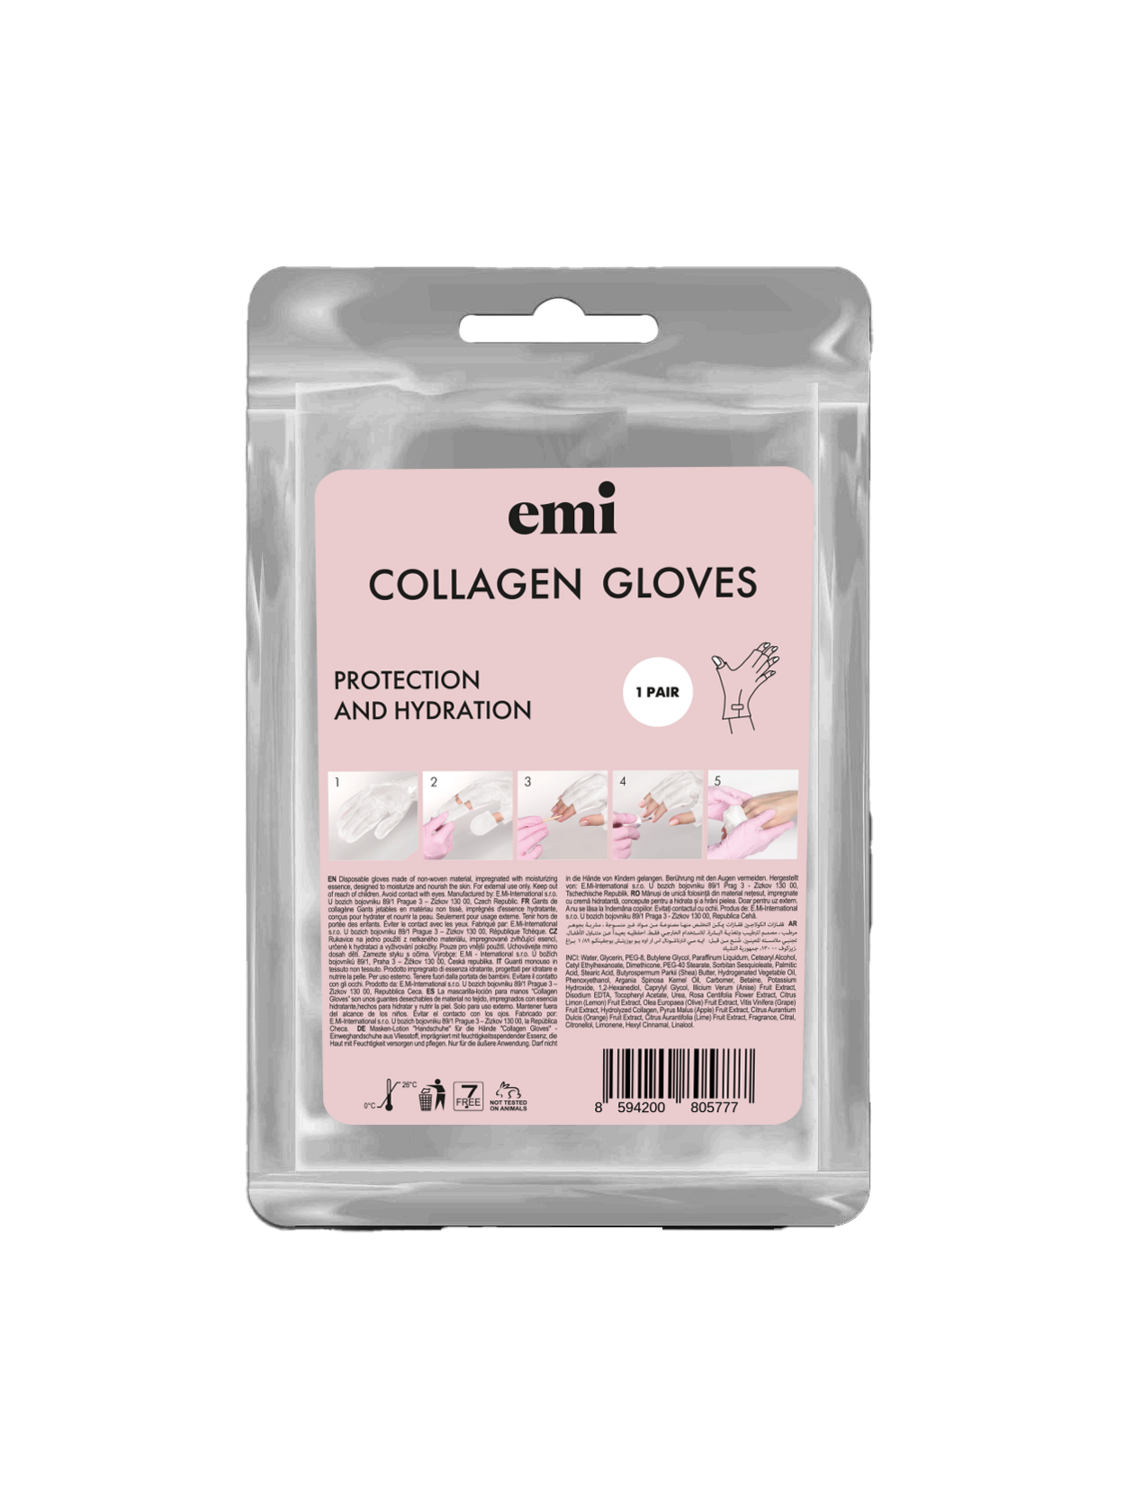 Collagen Gloves 1 pcs